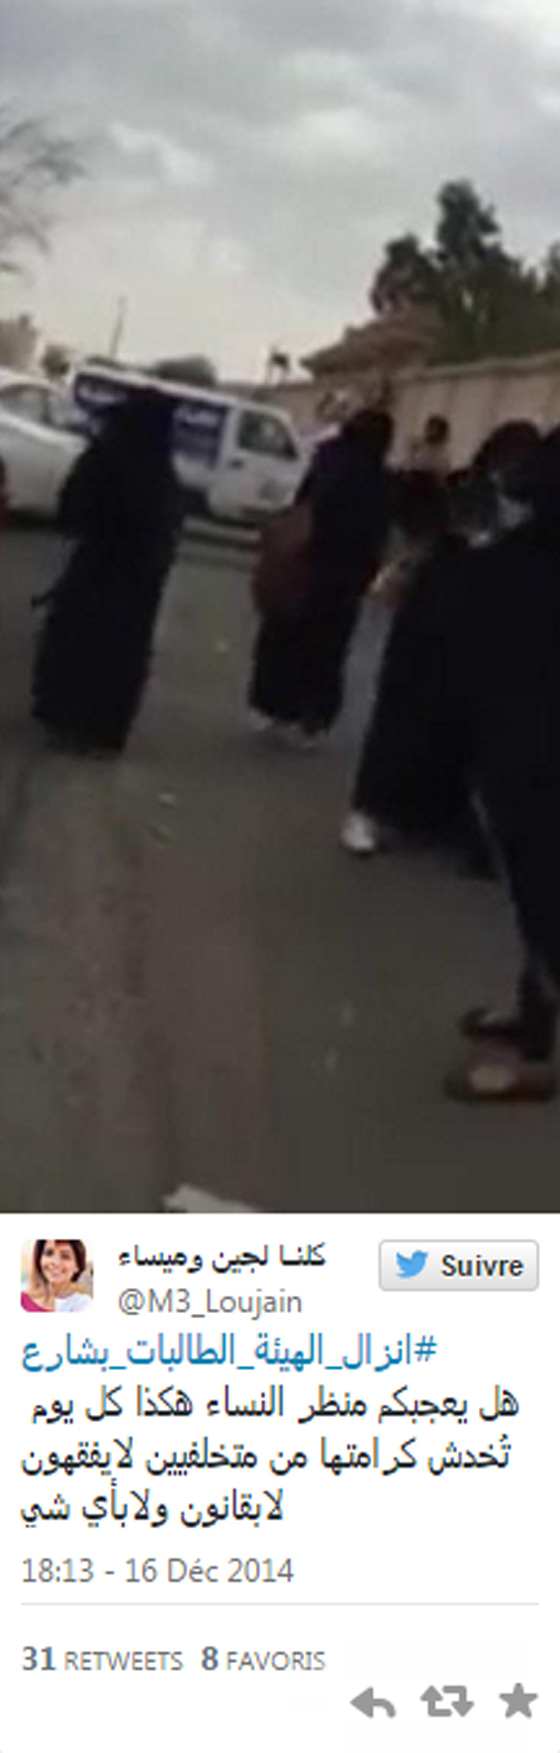   طرد طالبات سعوديات من حافلة واهانتهن بواسطة اعضاء الهيئة  صورة رقم 3